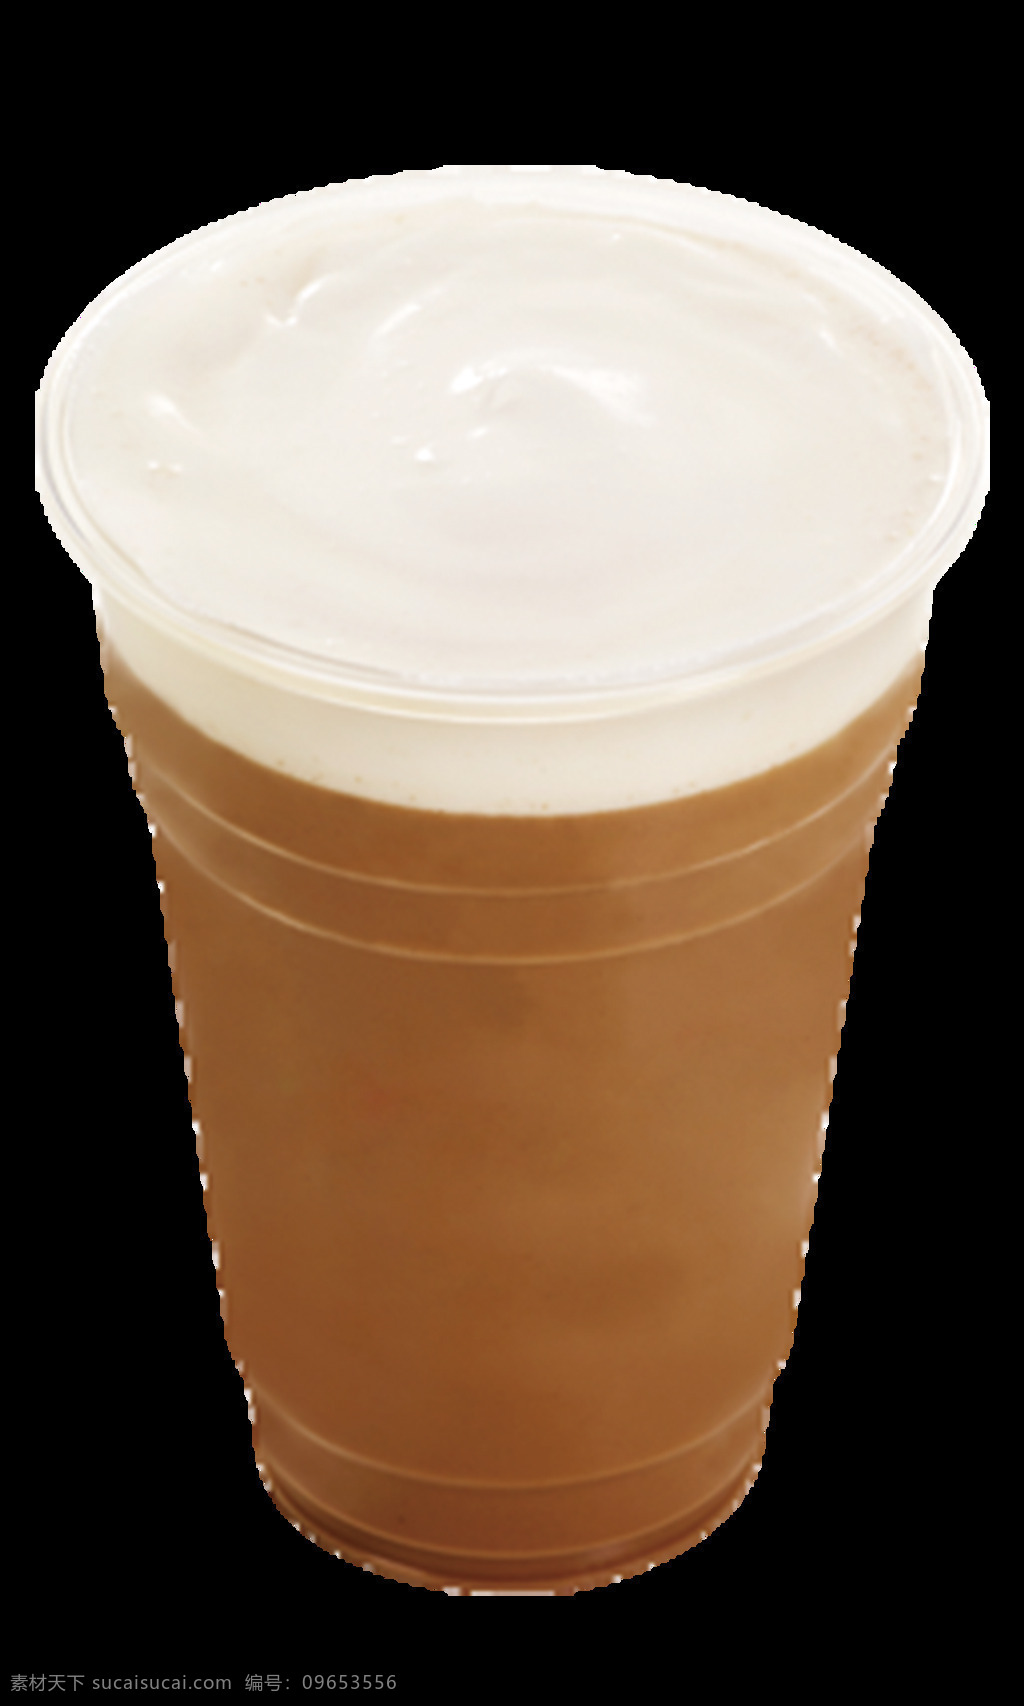 意式摩卡咖啡 意式 摩卡咖啡 意式咖啡 奶盖咖啡 抠好的素材 透明底 coco 抠 好 单 品 图 生活百科 餐饮美食